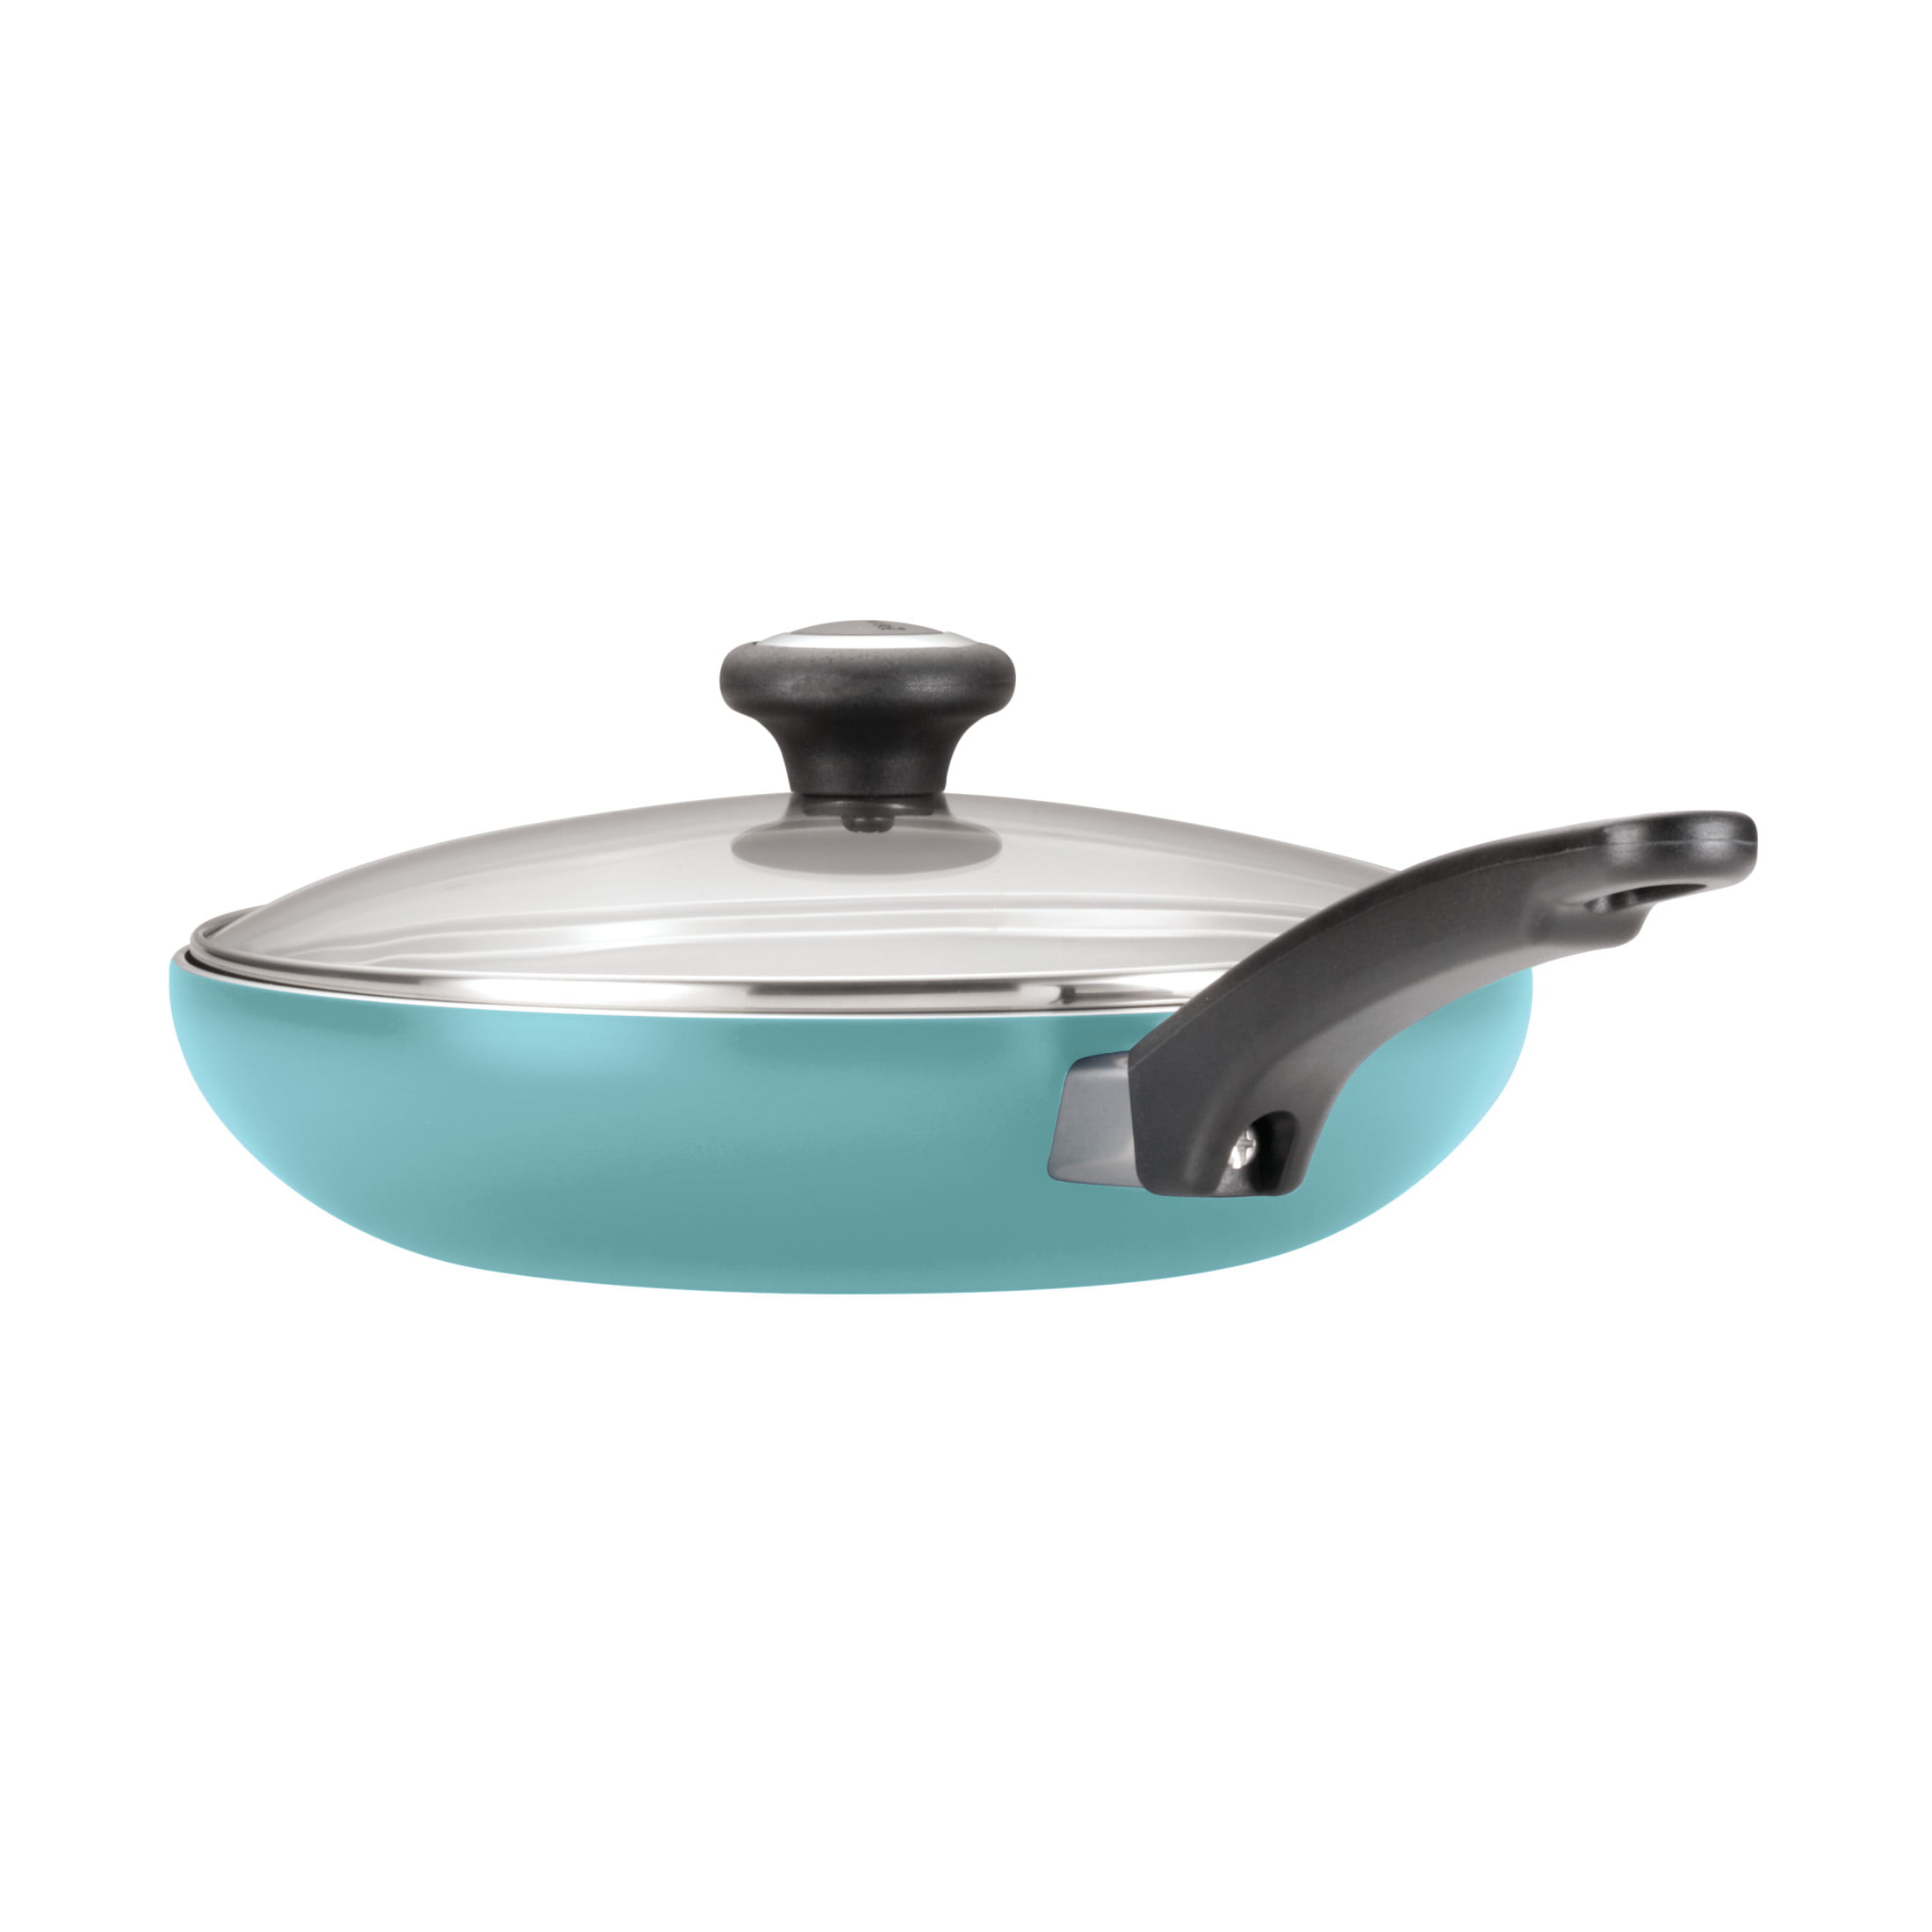 12-Piece Easy Clean Nonstick Pots and Pans/Cookware Set, Aqua blue